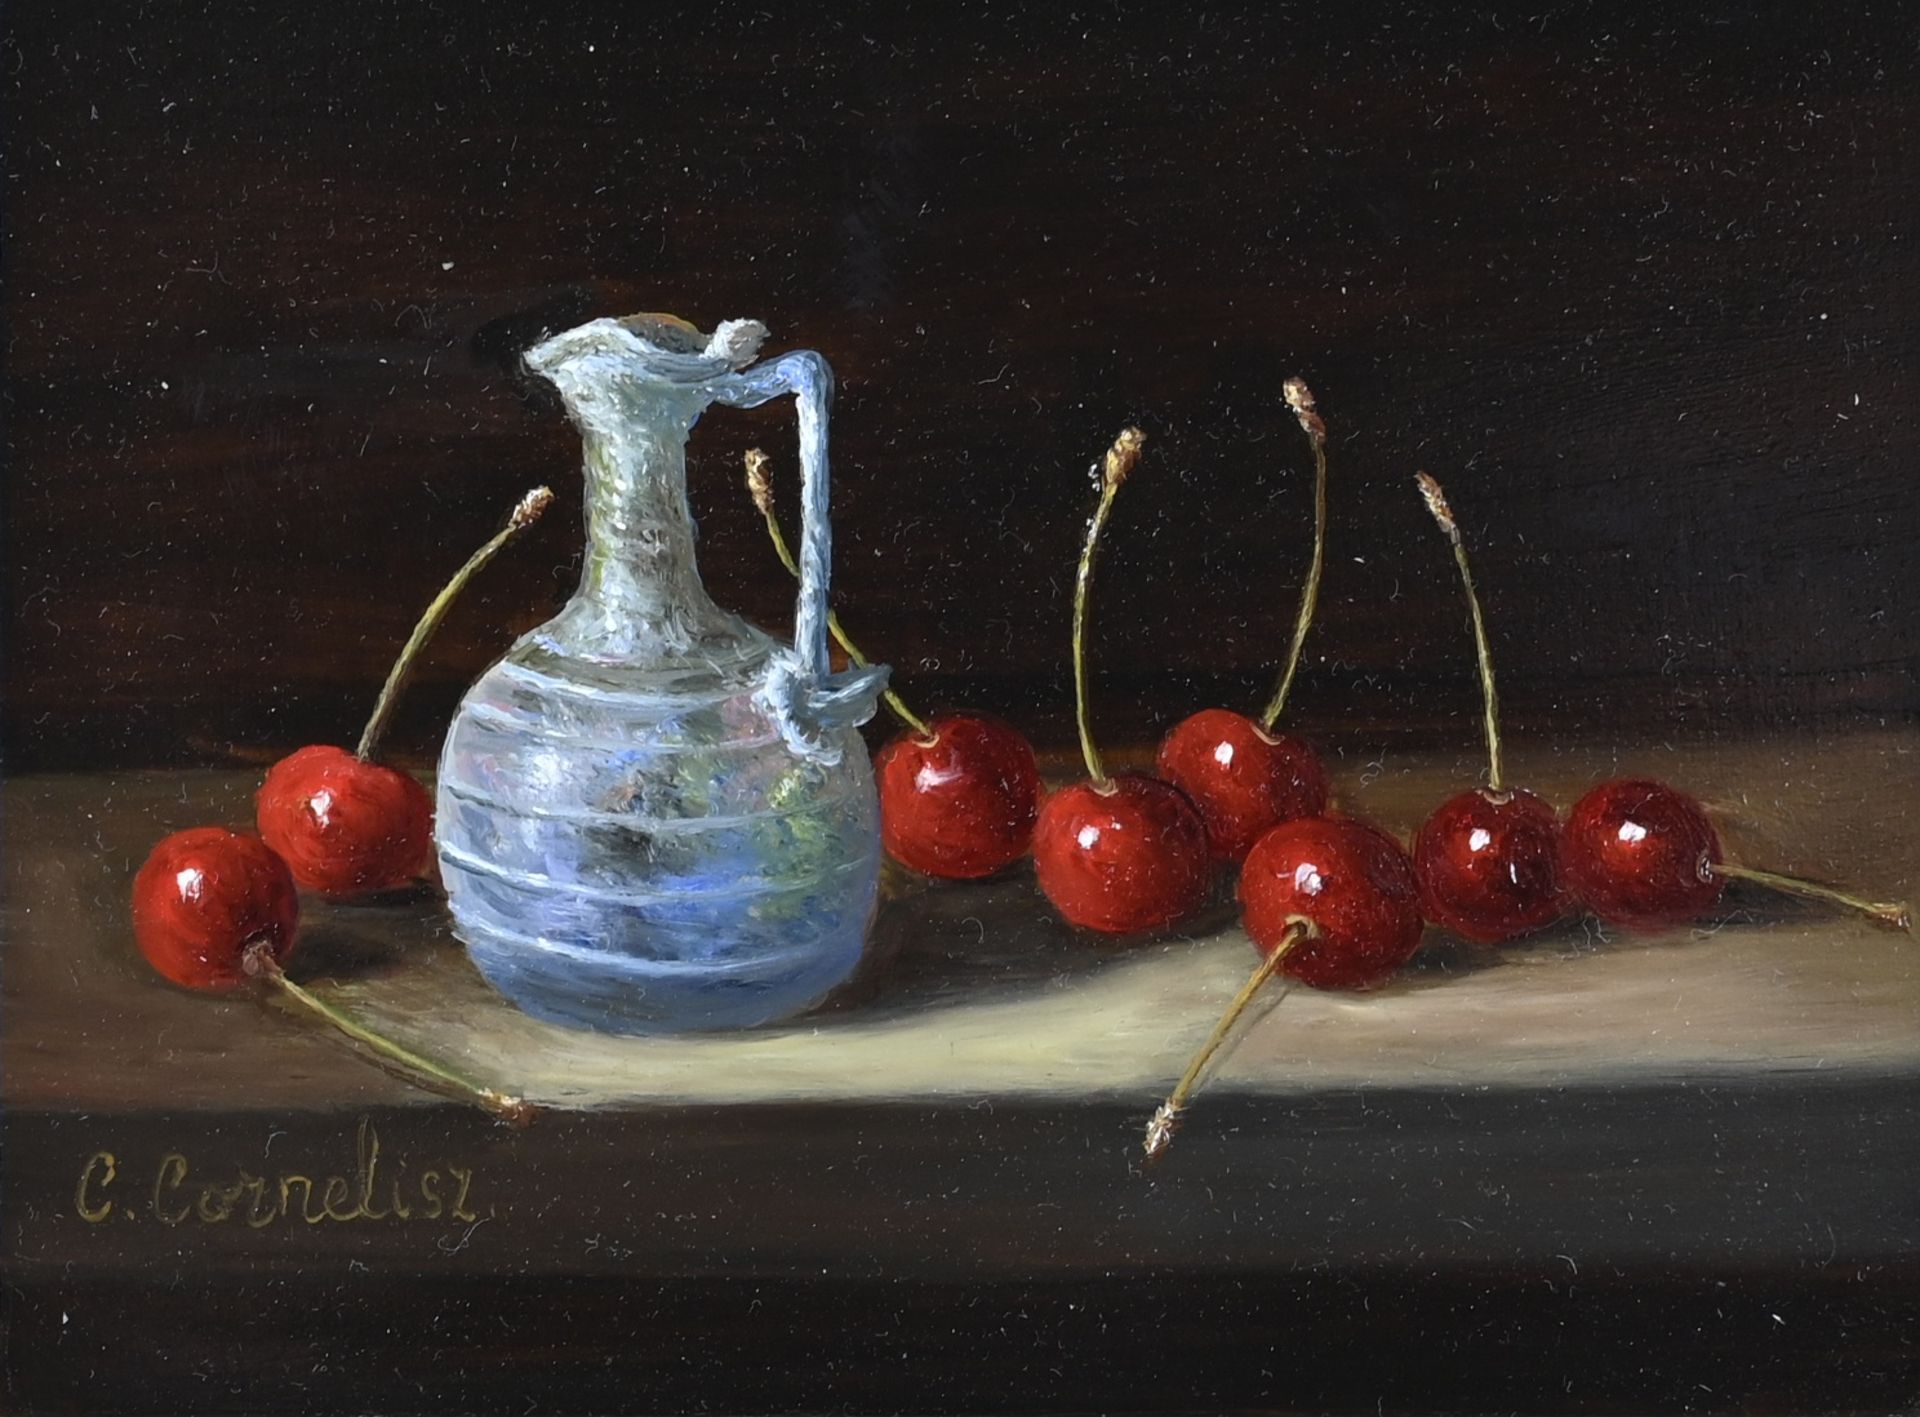 C. Cornelisz, Roman glass with cherries